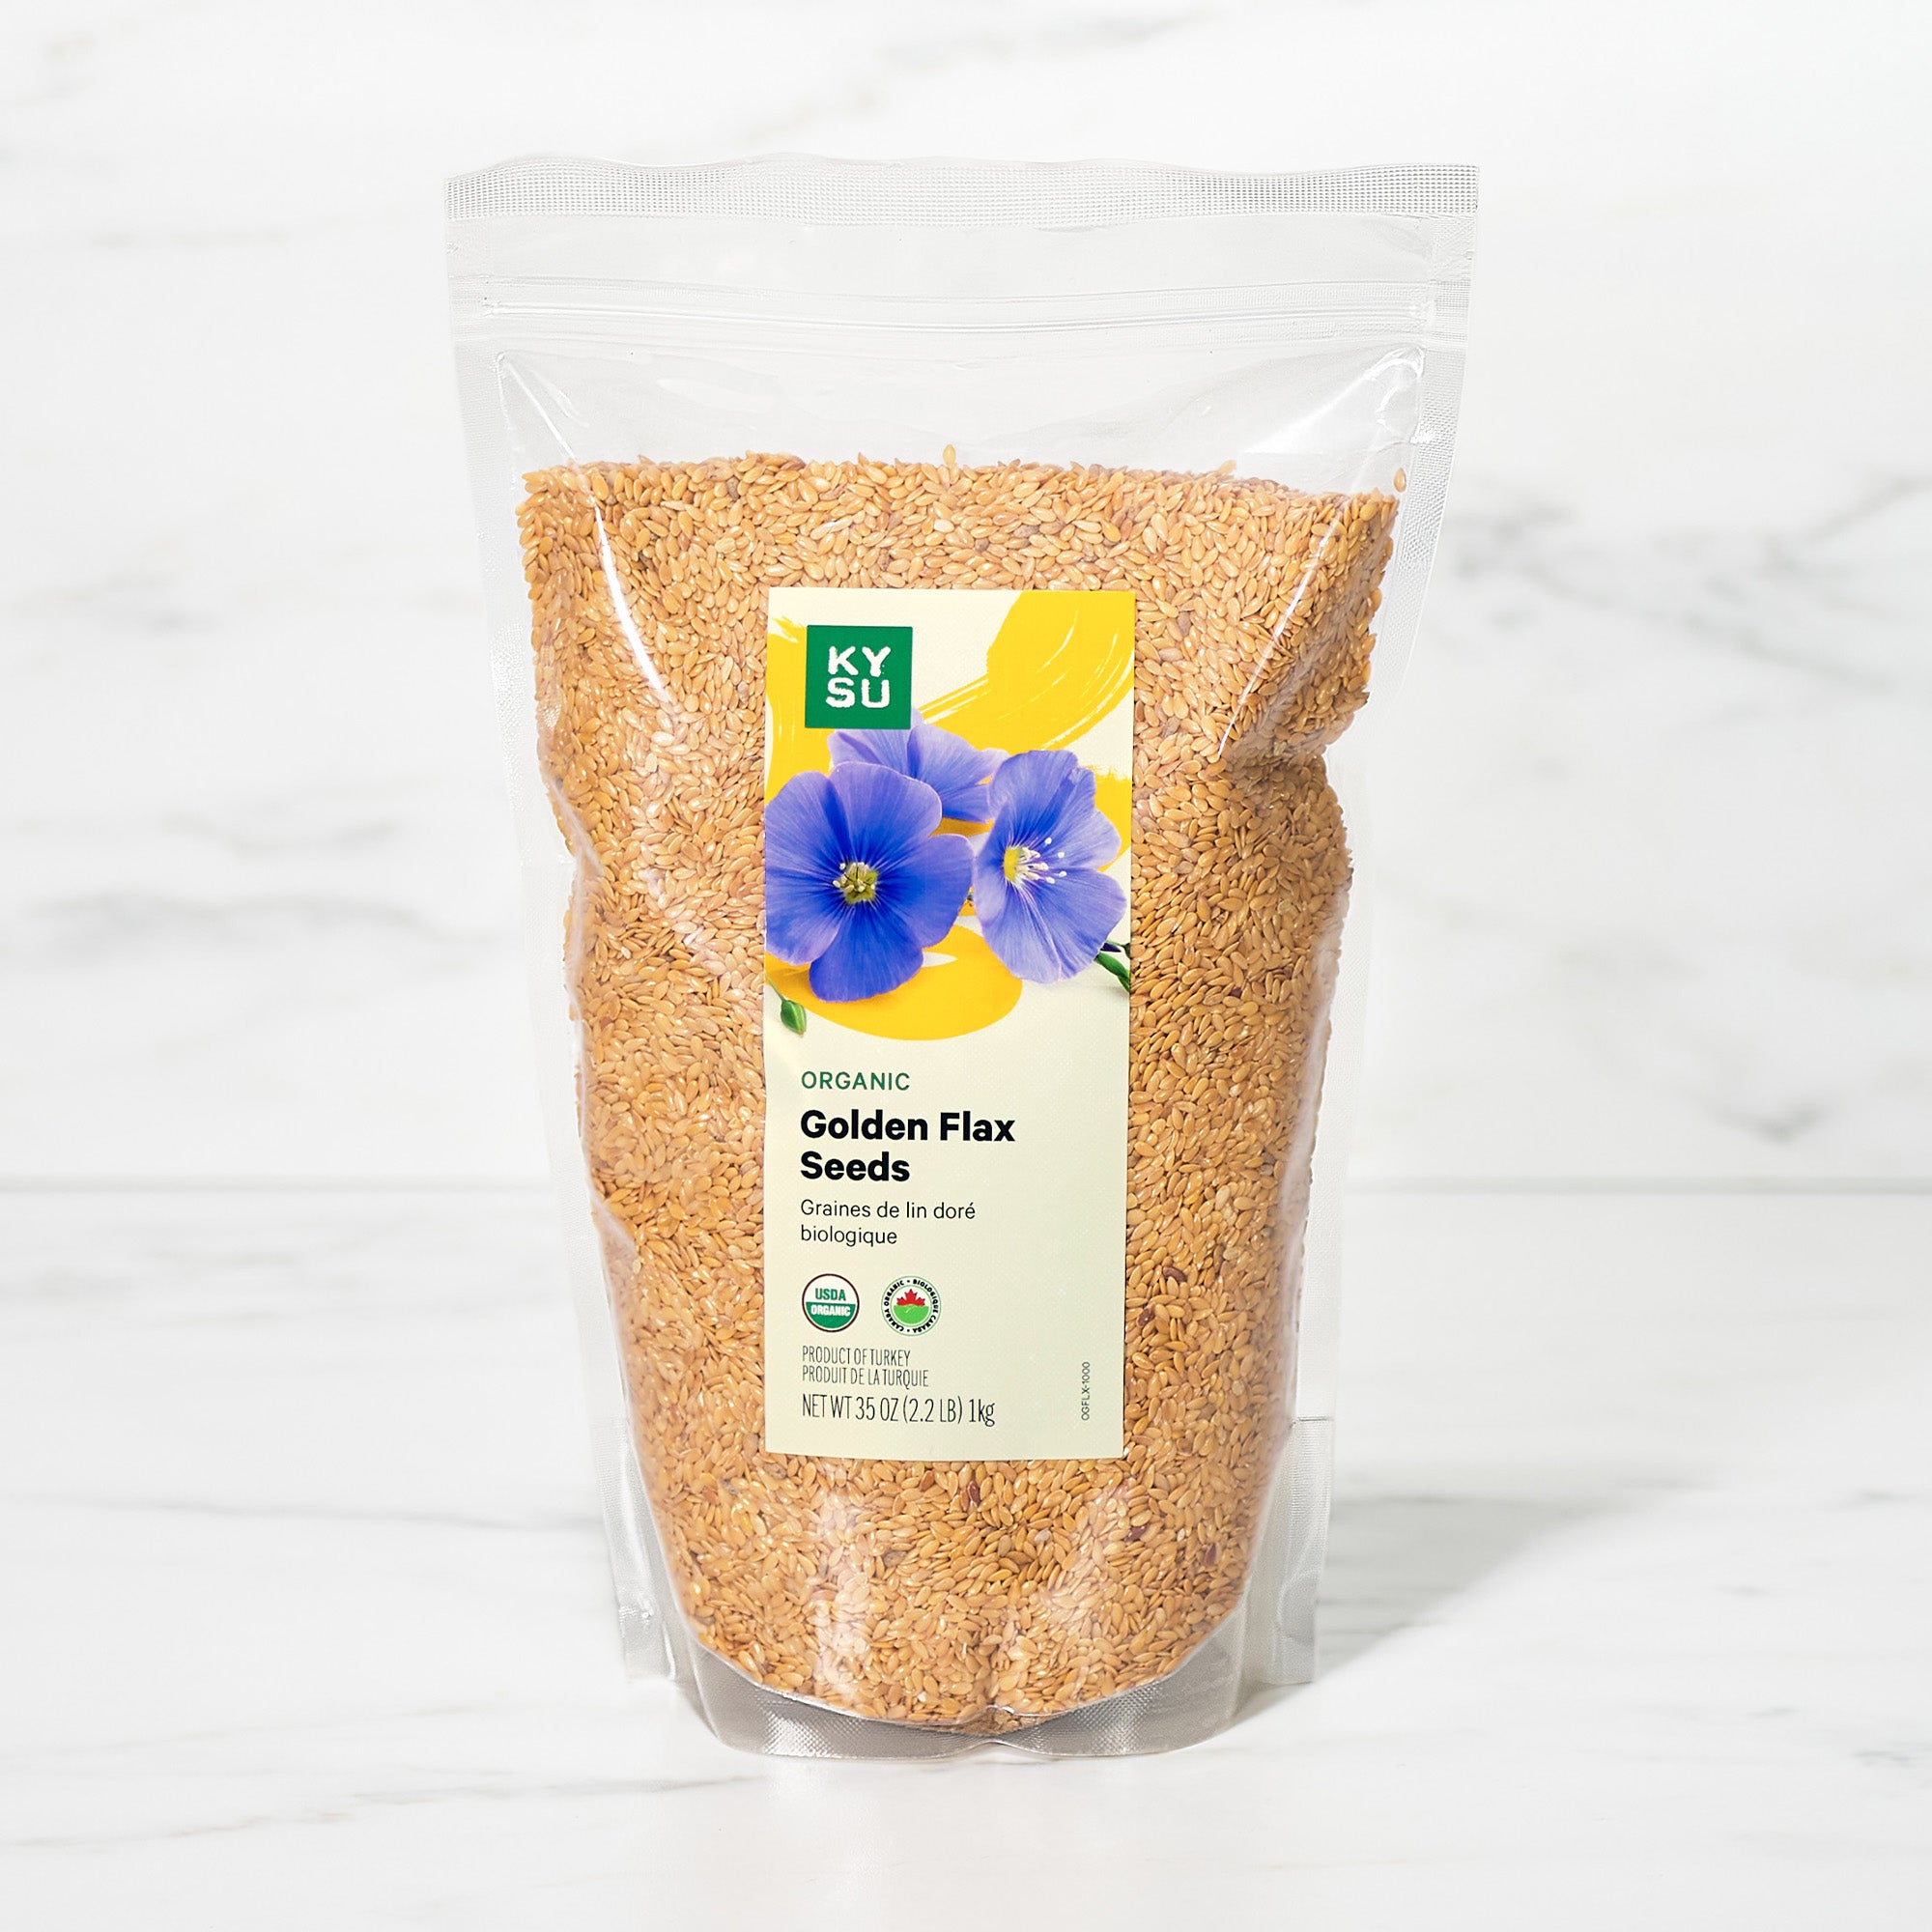 Organic golden flax seeds, 2.2 lb